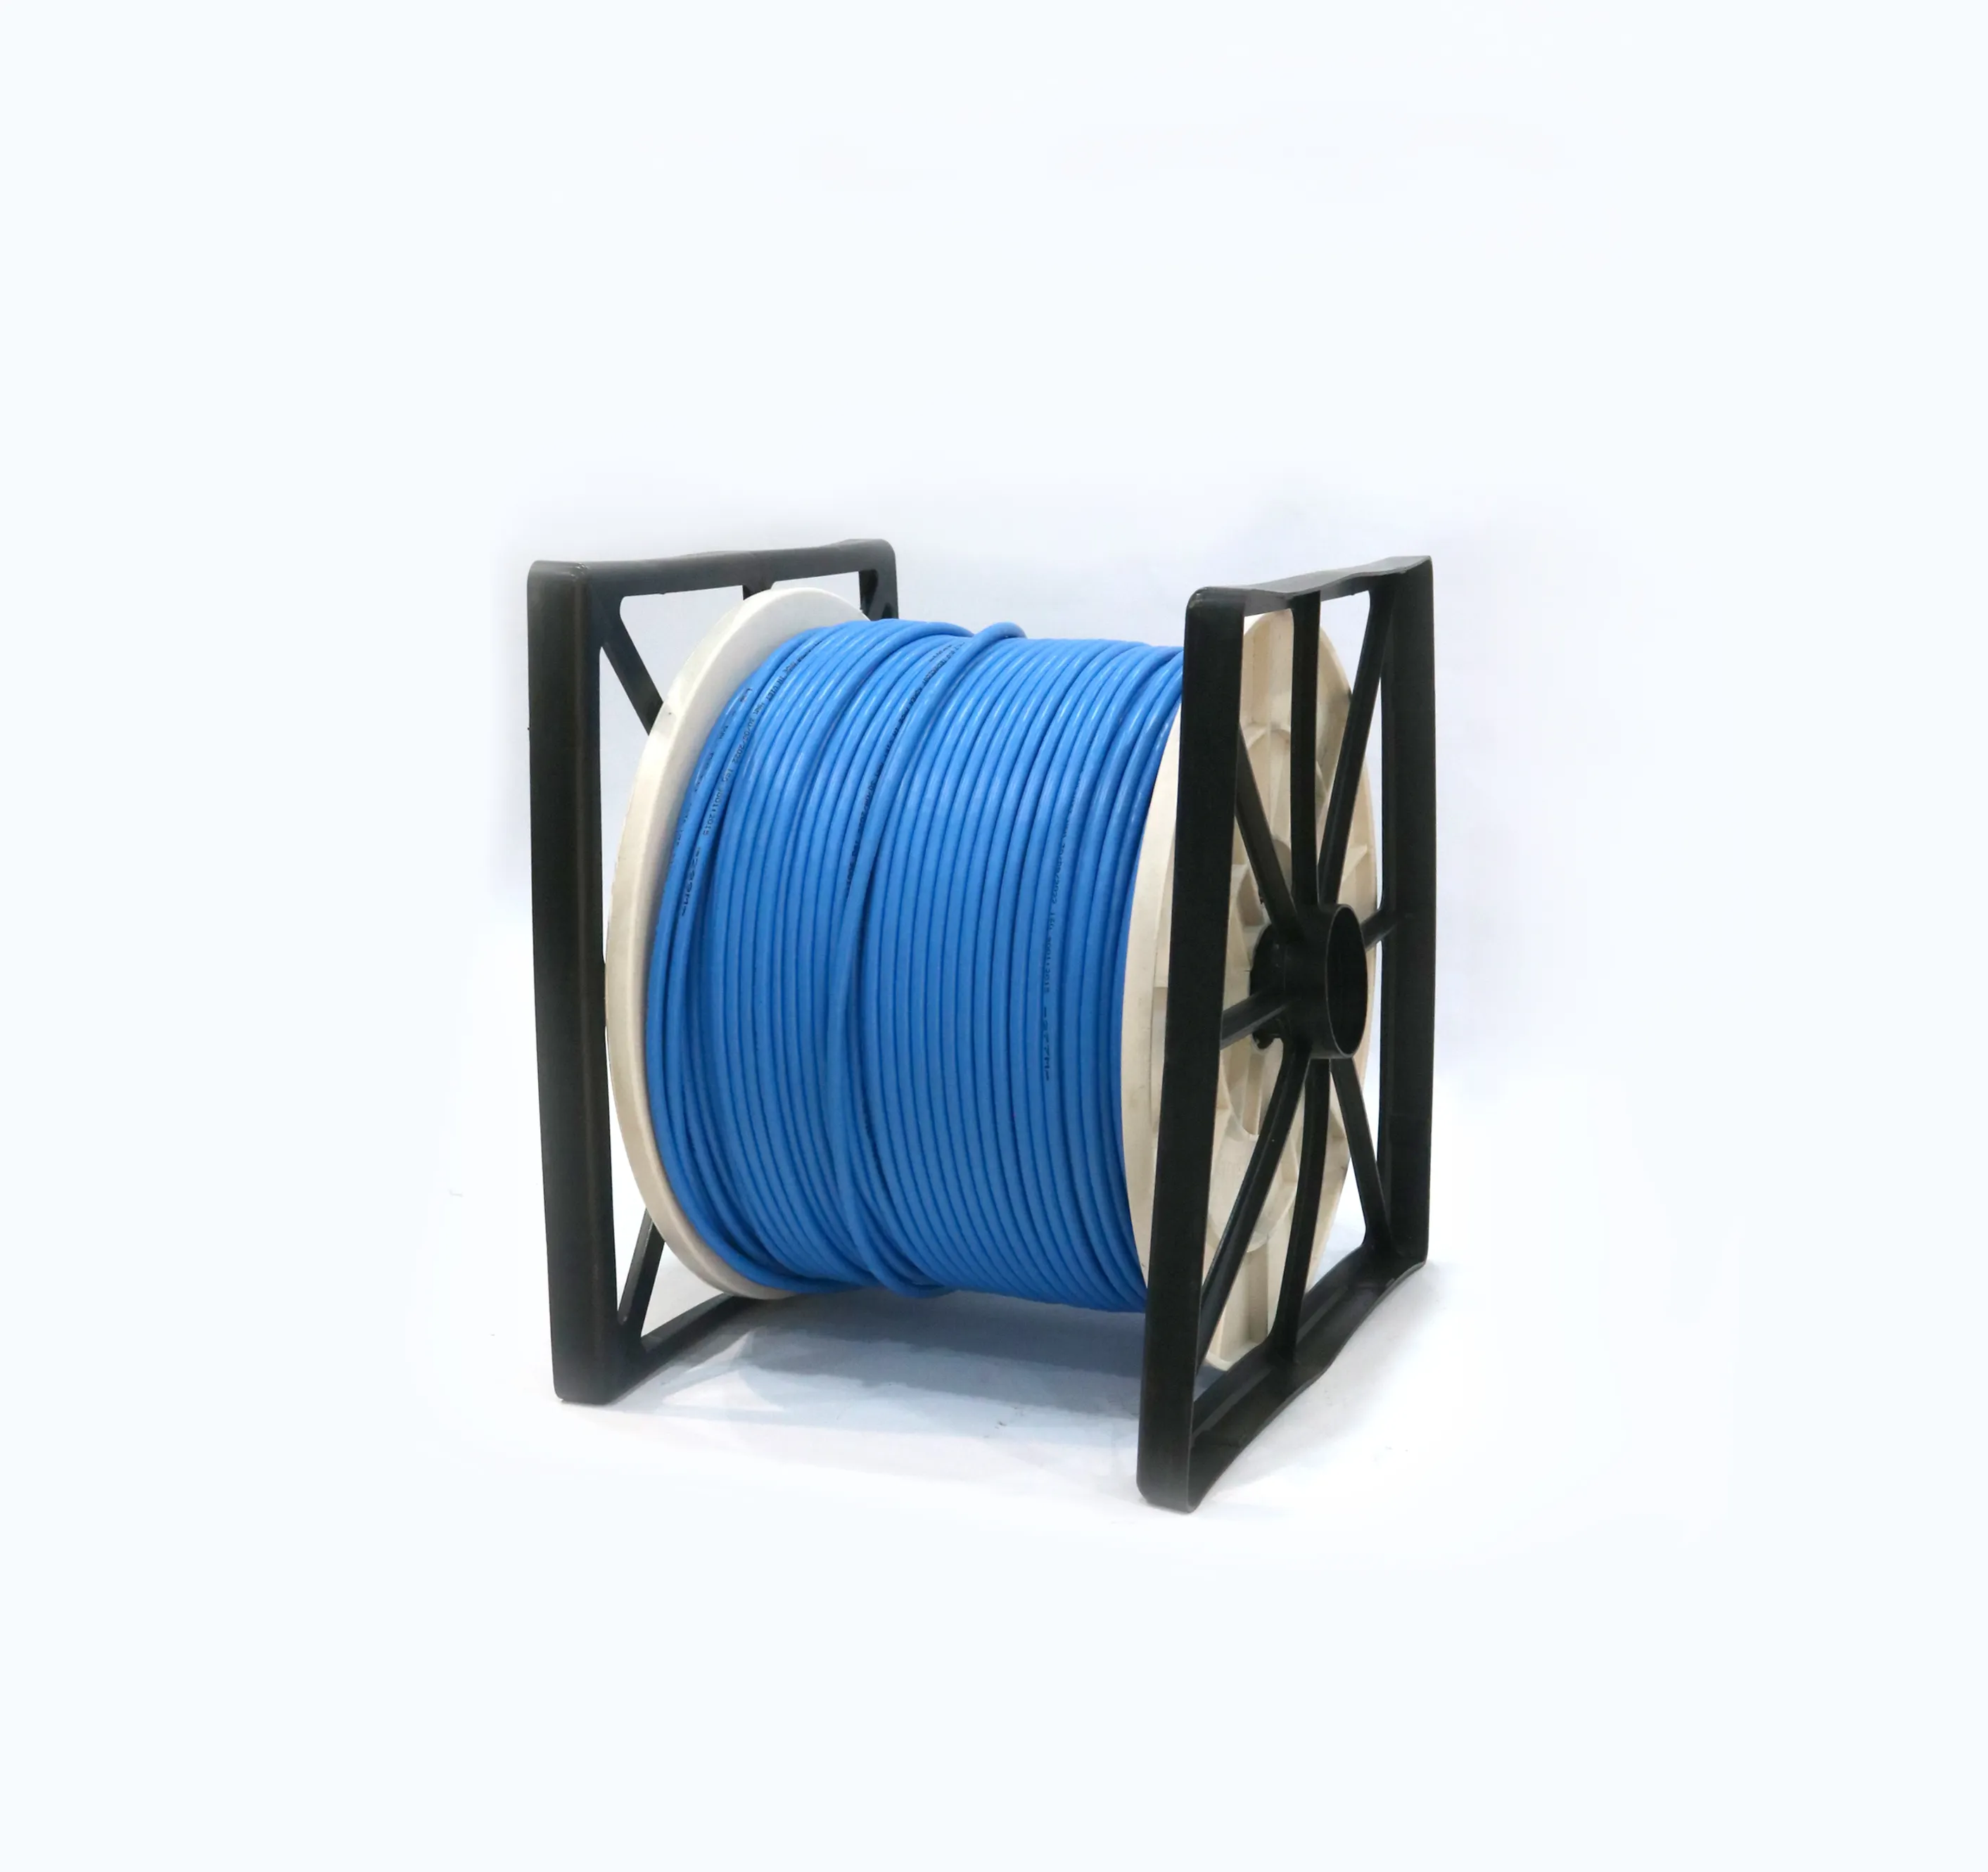 Hochwertiges Ethernet-Netzwerk kabel mit Großhandels preis CAT6 UTP 4 Paare 23AWG Kupfer über Netzwerk kabel tester